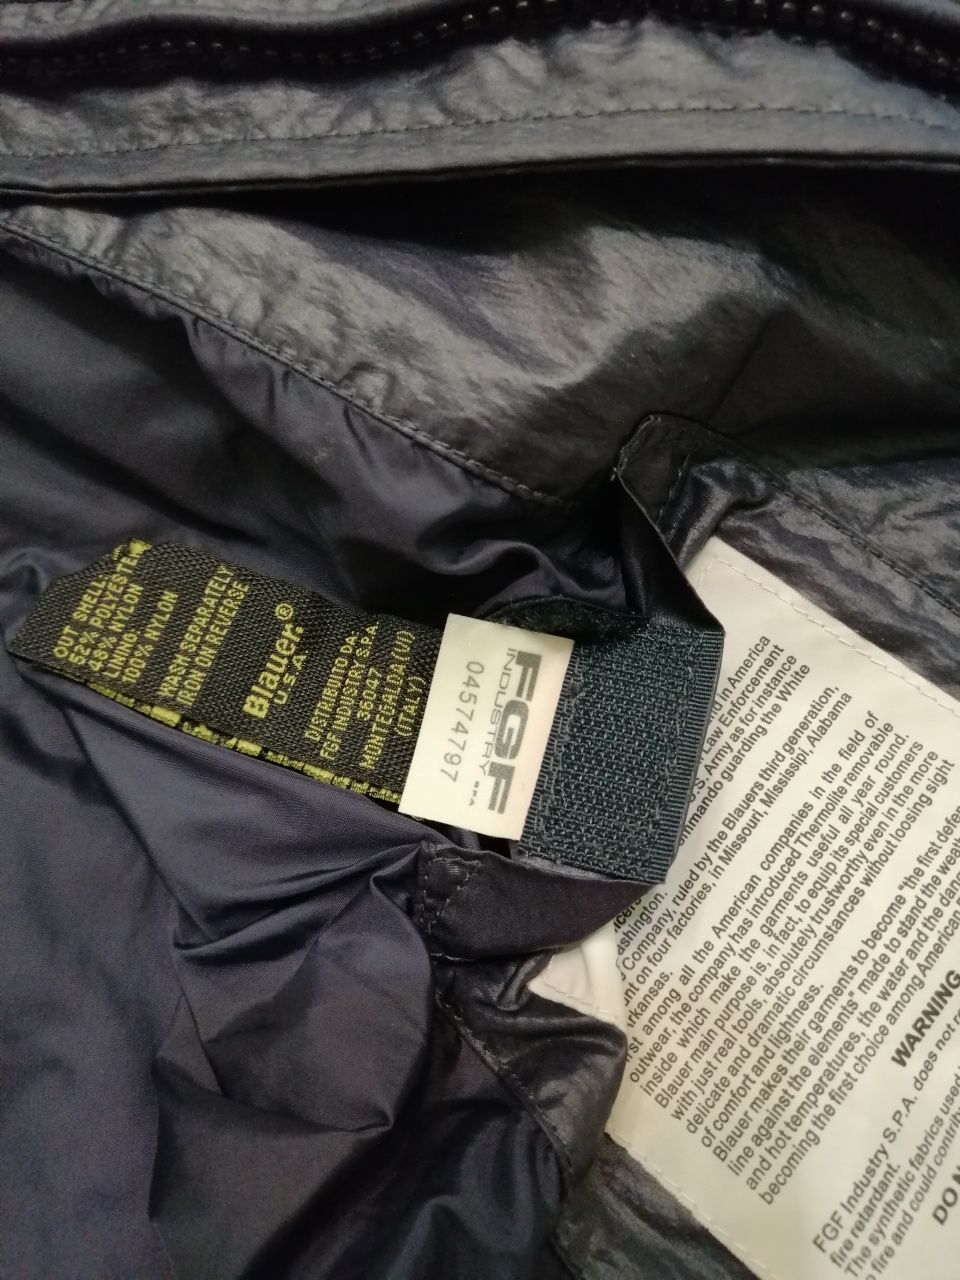 BLAUER jachetă PREMIUM originală USA damă LUX | transport GRATUIT‼️FAN